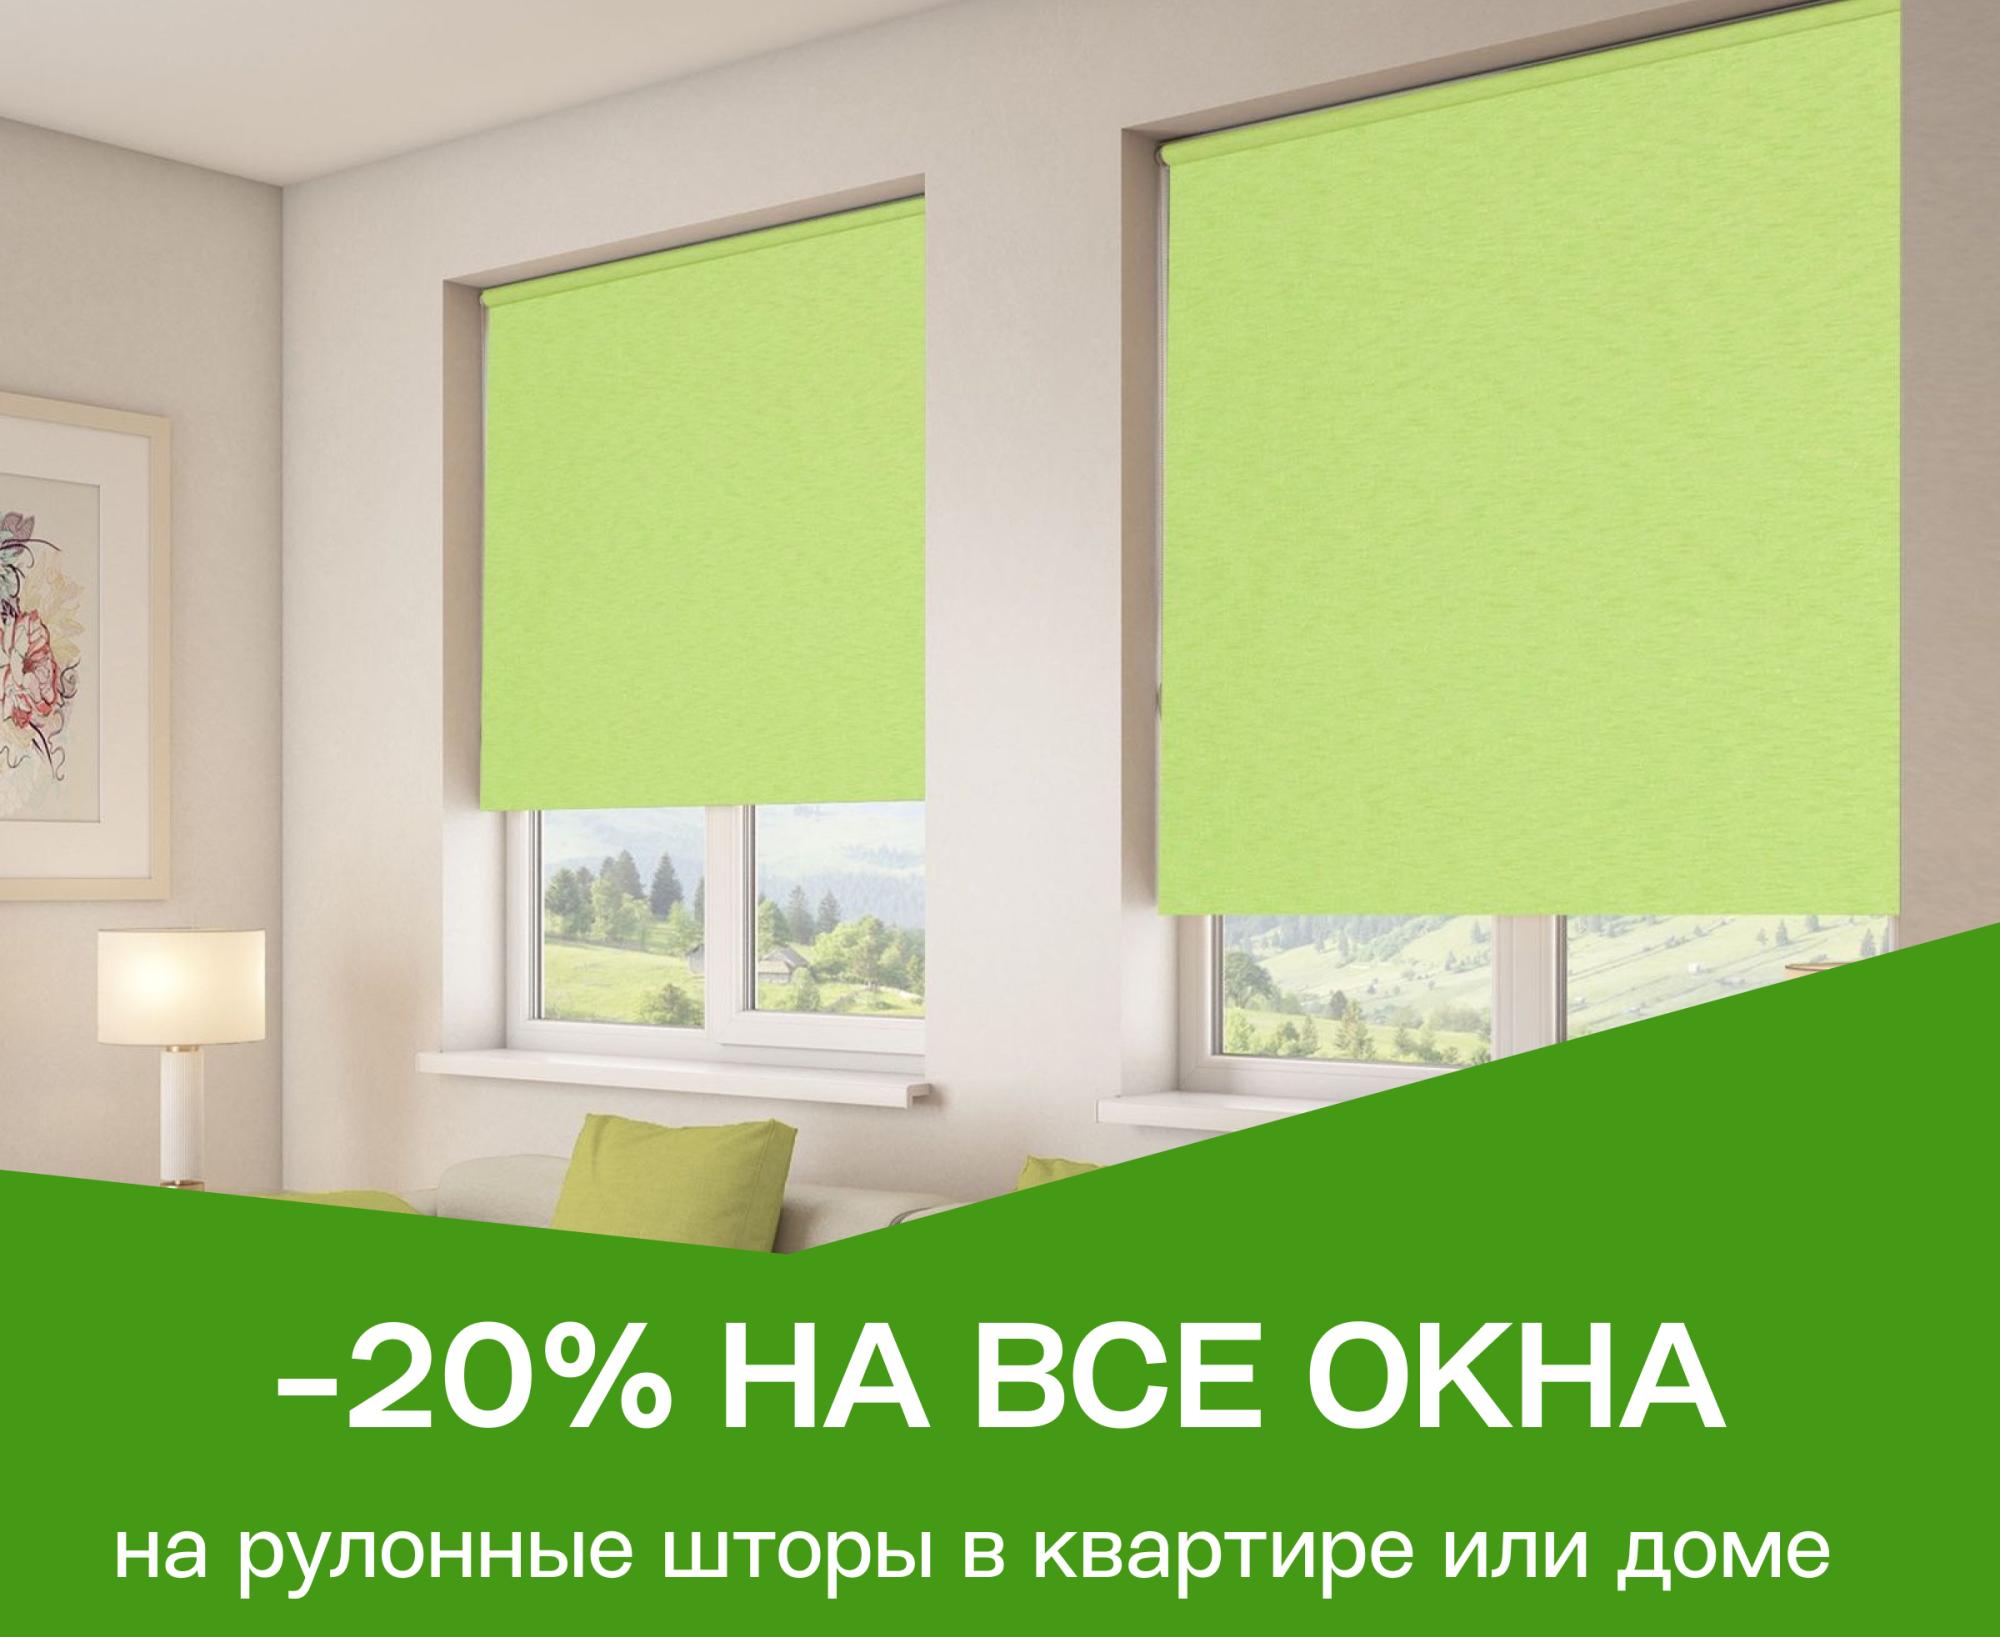 Скидка 20% на рулонные шторы на все окна в квартире,  доме или офисе